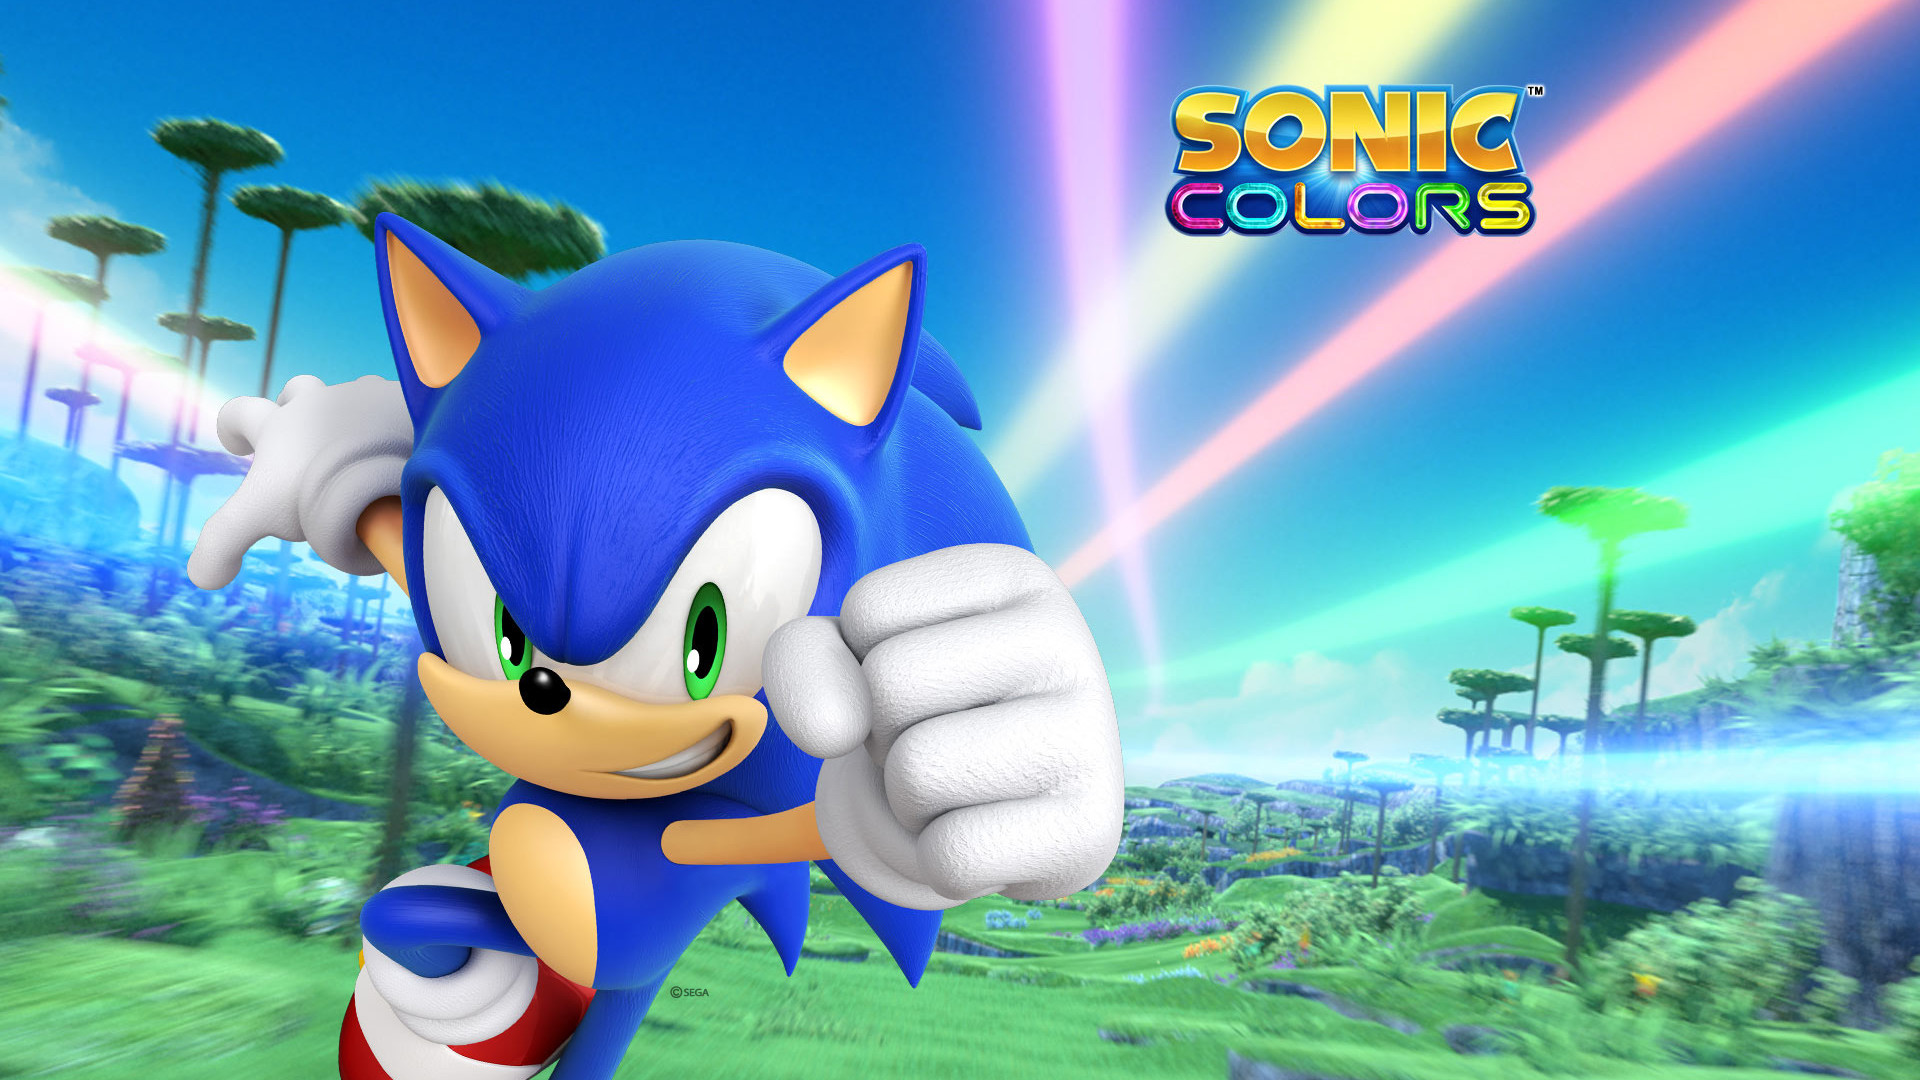 Sonic Colors: Ultimate | SEGA | GameStop